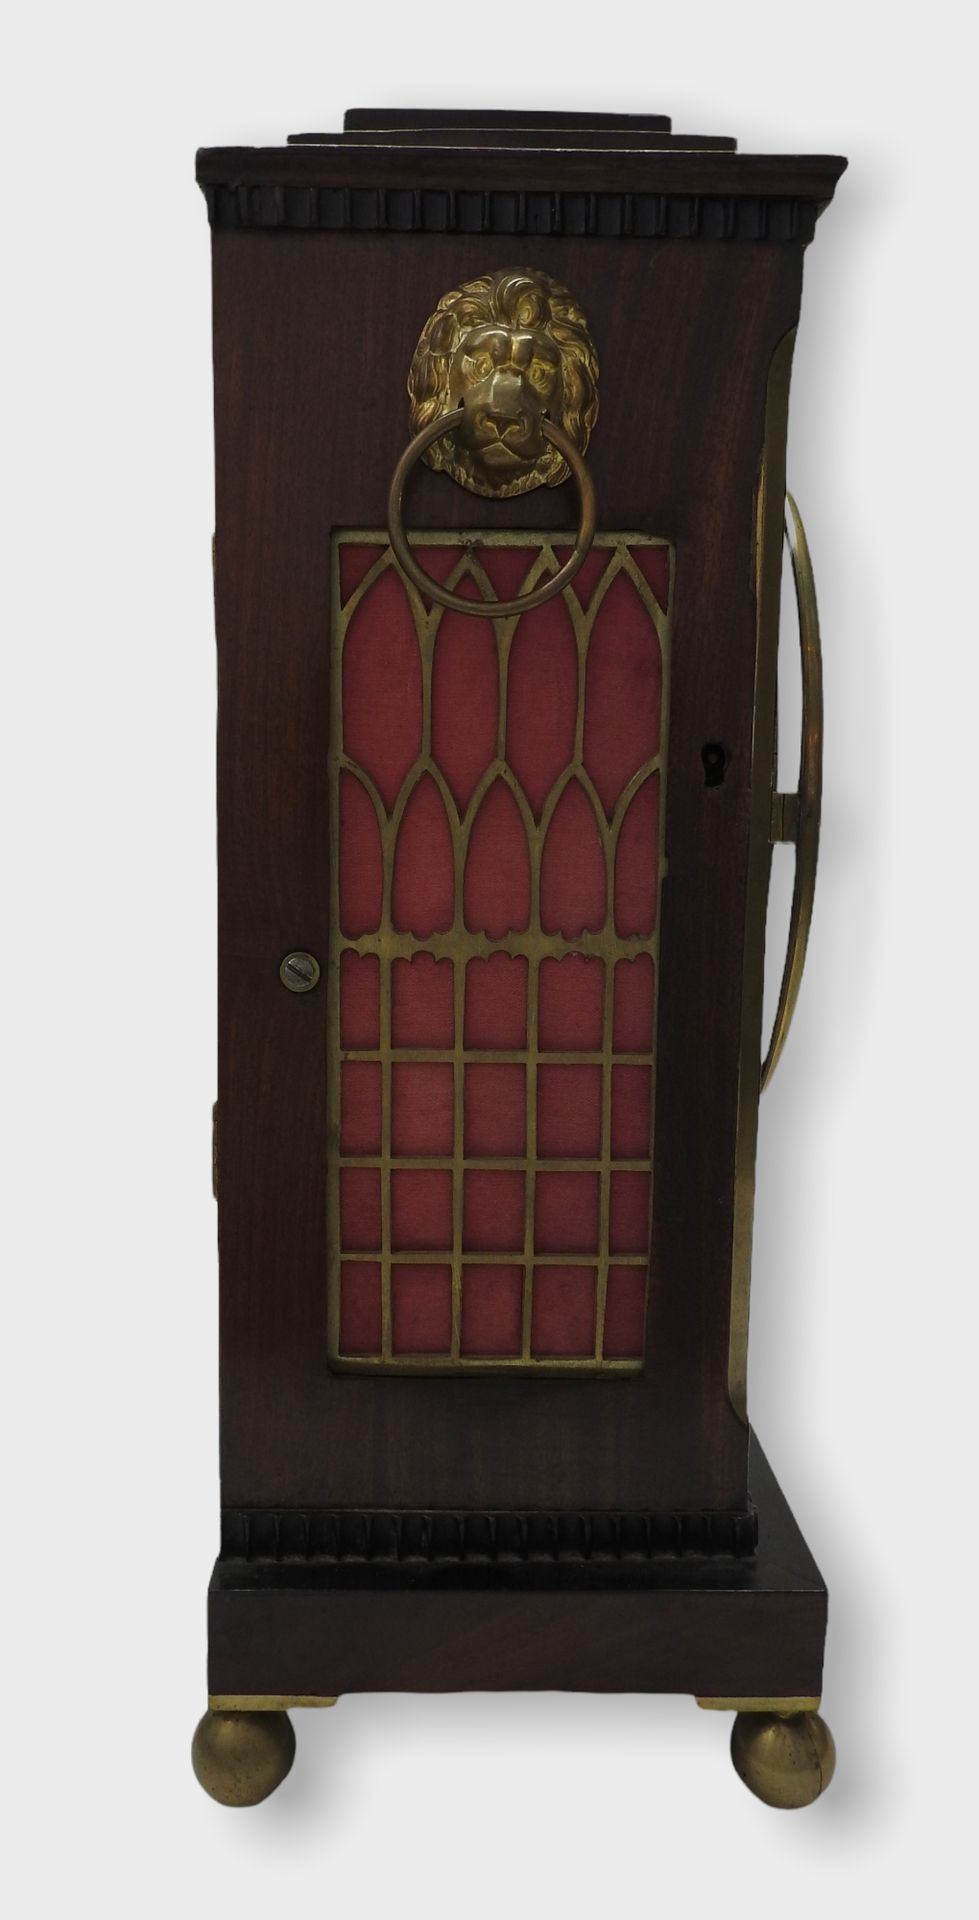 Englische Konsolenuhr, Bracket clock - Image 4 of 14